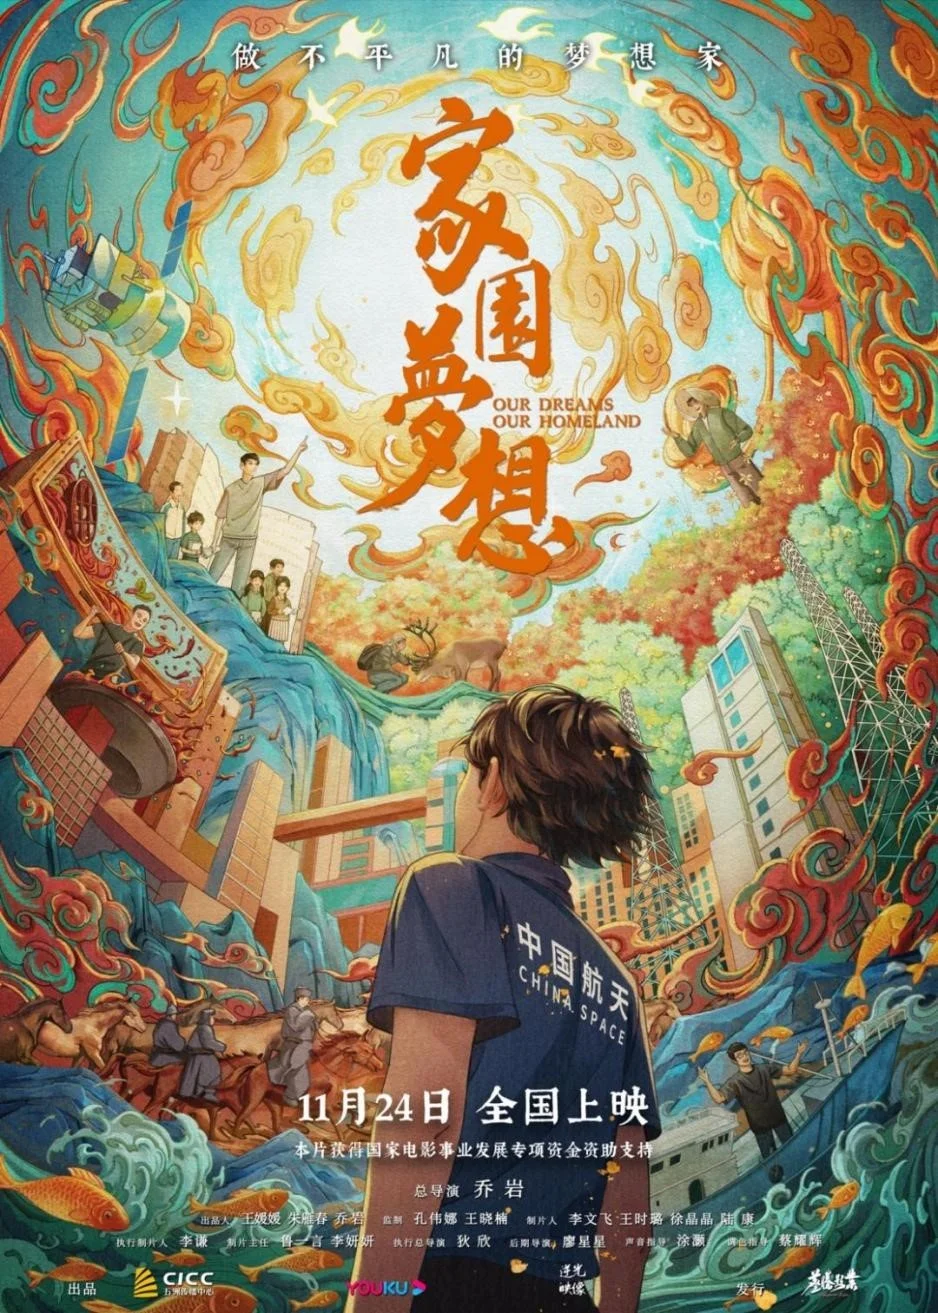 纪录电影《家园梦想》 11月24日起上映 首映礼在京举办